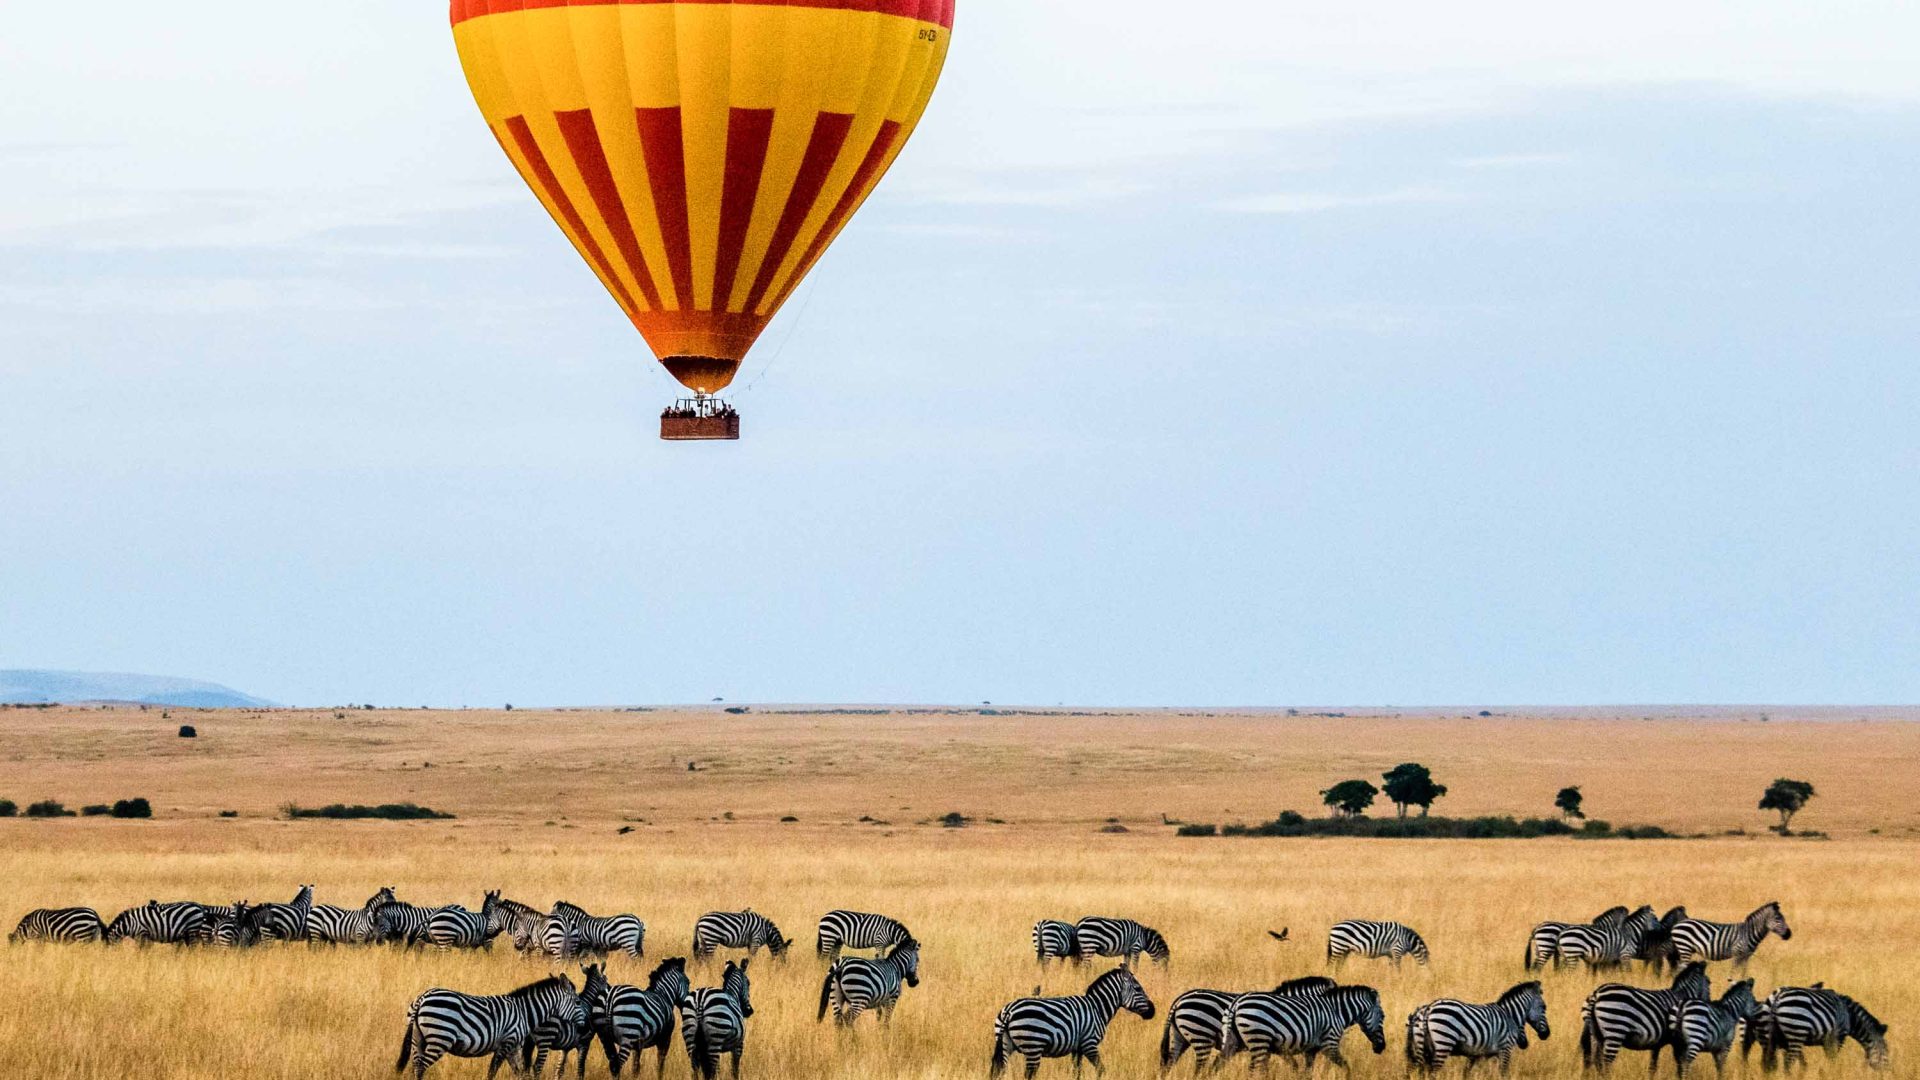 A hot air balloon flies over zebras in Kenya.